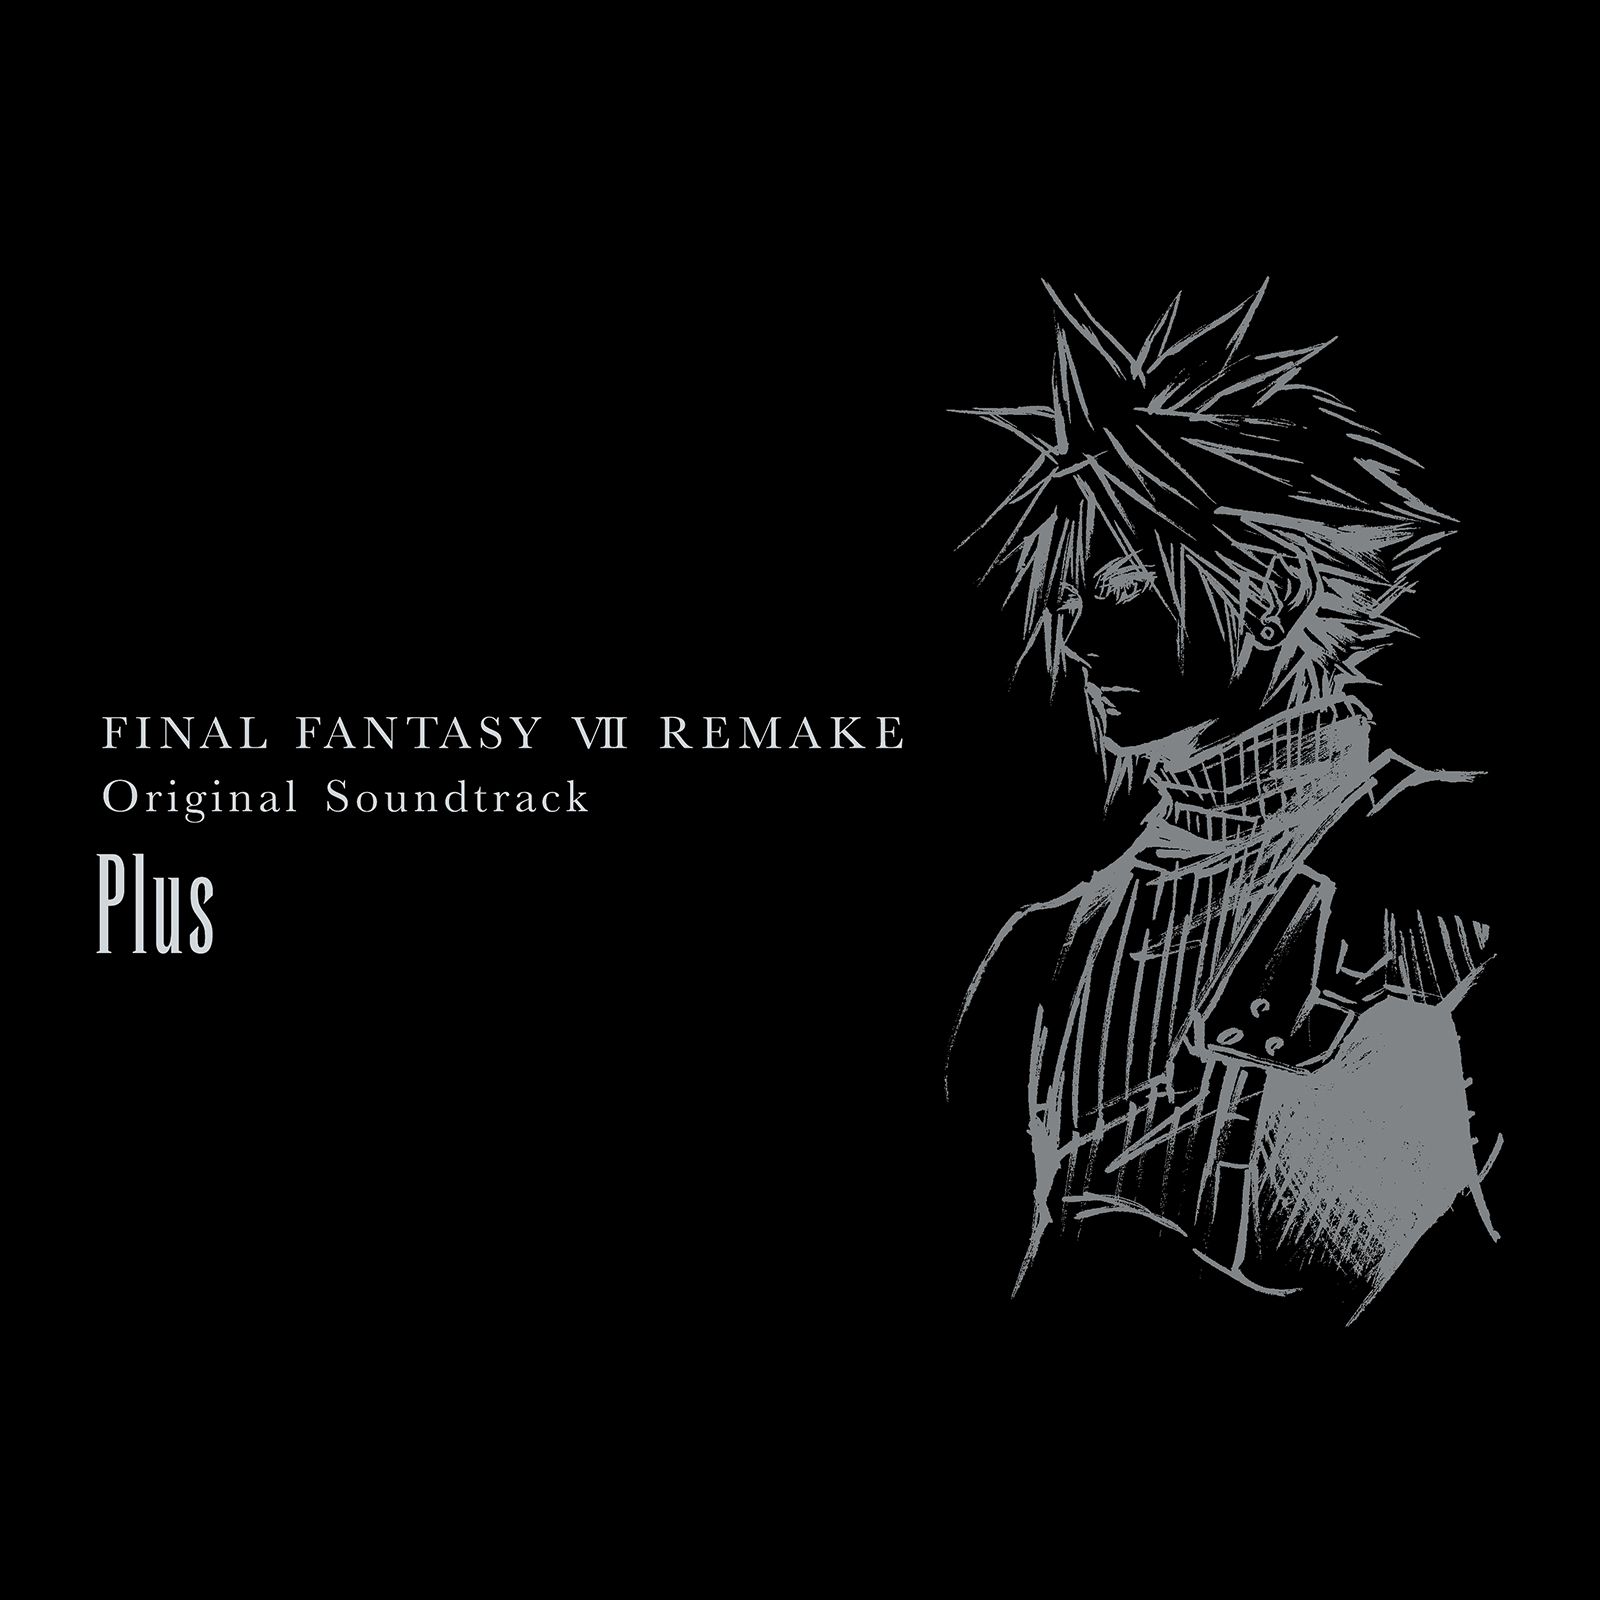 Nhạc nền độc quyền Final Fantasy VII Remake (Final Fantasy VII Remake exclusive soundtrack): Với những người yêu thích trò chơi RPG huyền thoại Final Fantasy, bản làm lại Final Fantasy VII Remake đang làm mưa làm gió trong cộng đồng game thủ. Hãy xem hình ảnh liên quan đến nhạc nền độc quyền của bản làm lại để cảm nhận được tác động không thể phủ nhận của âm nhạc trong trò chơi này.